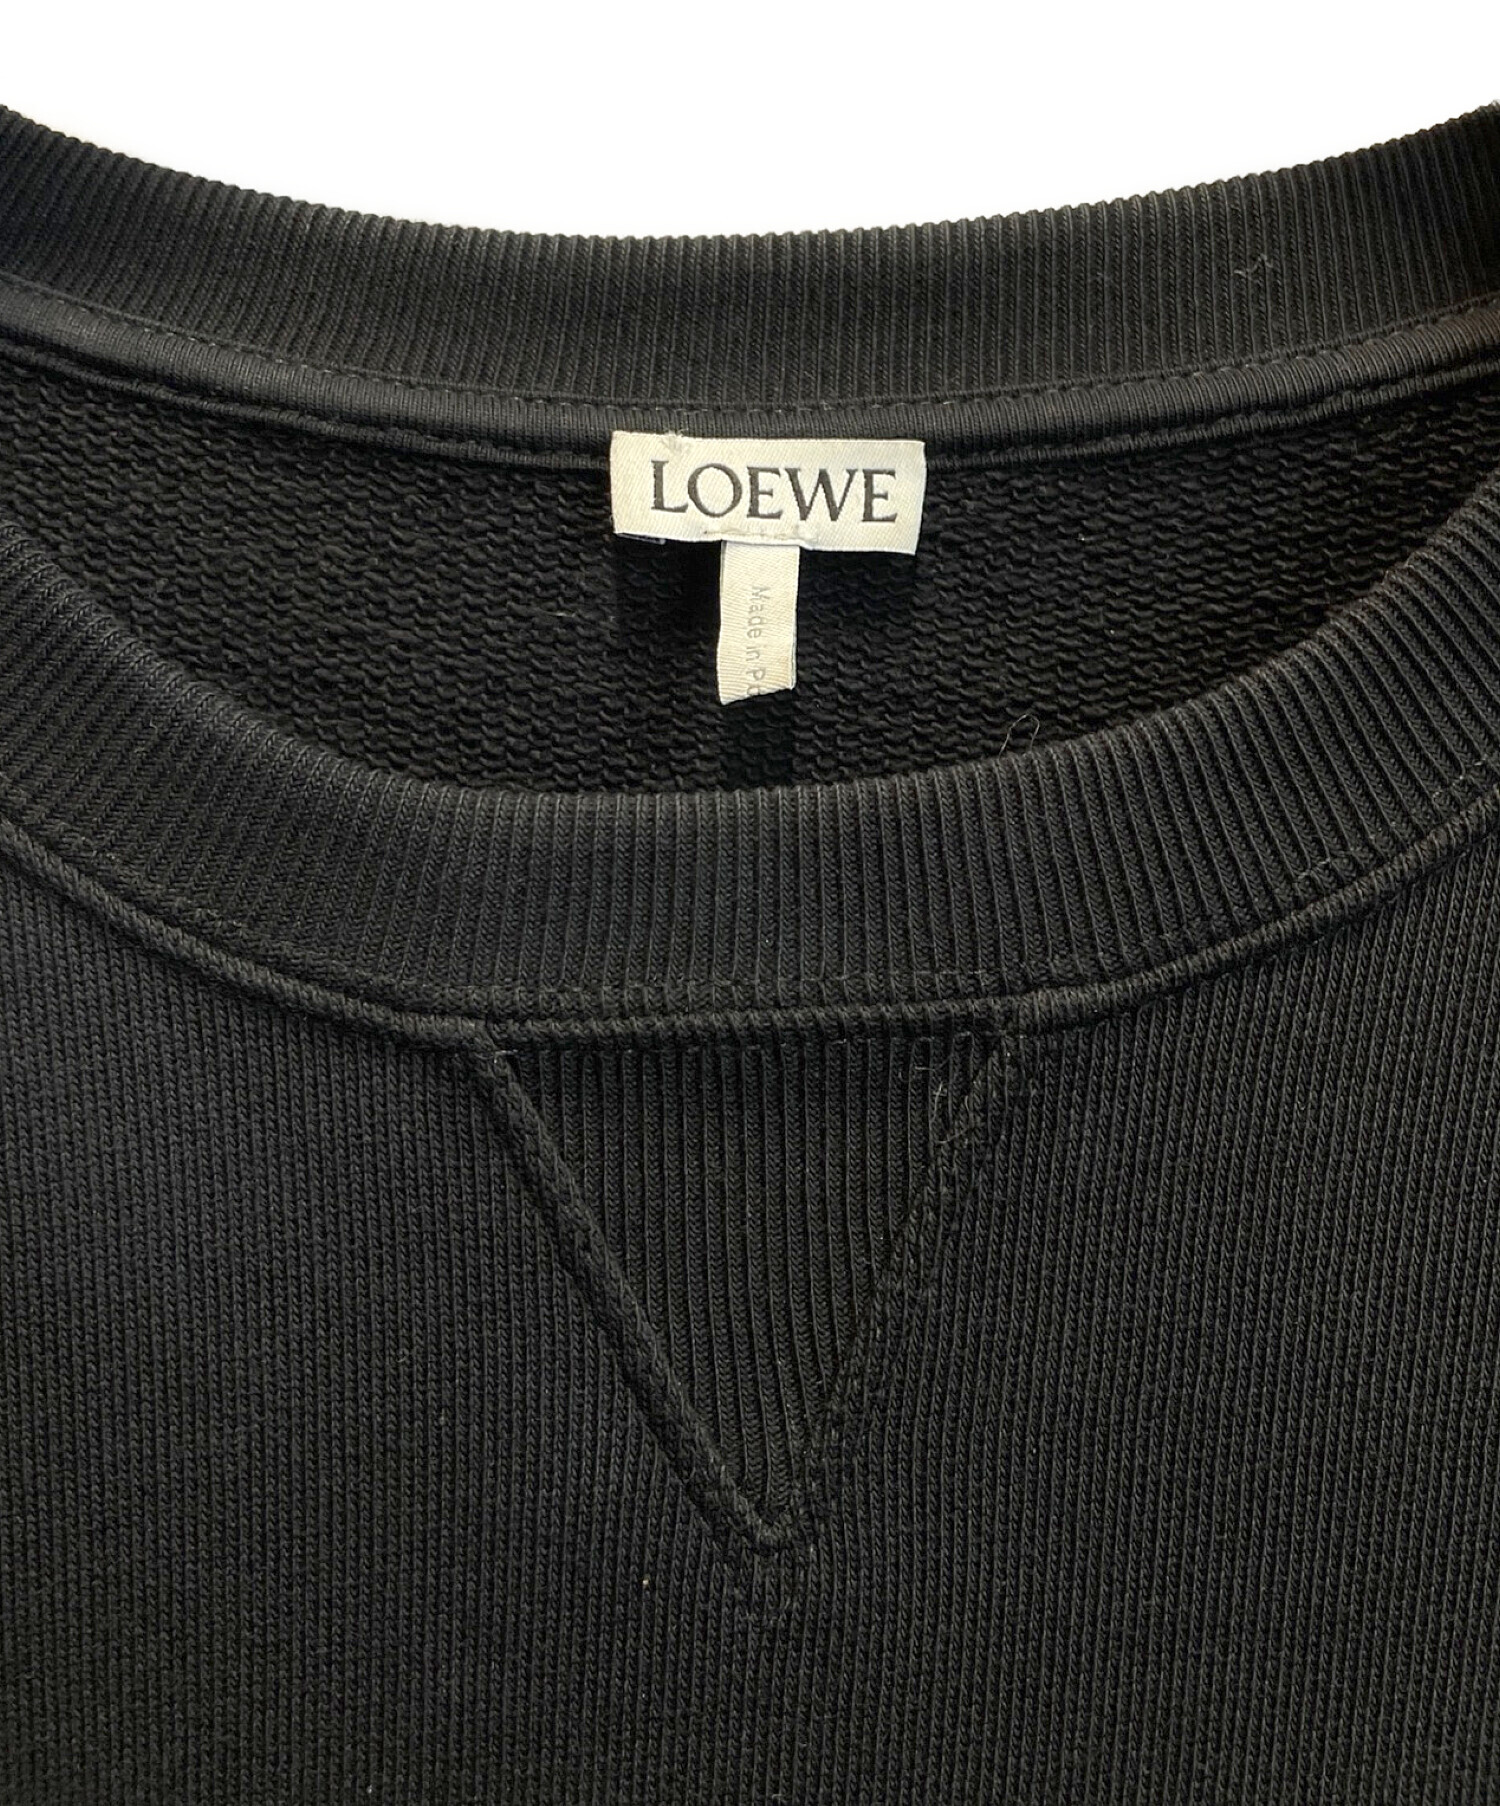 LOEWE (ロエベ) エンブロイダリー スウェットシャツ ブラック サイズ:M